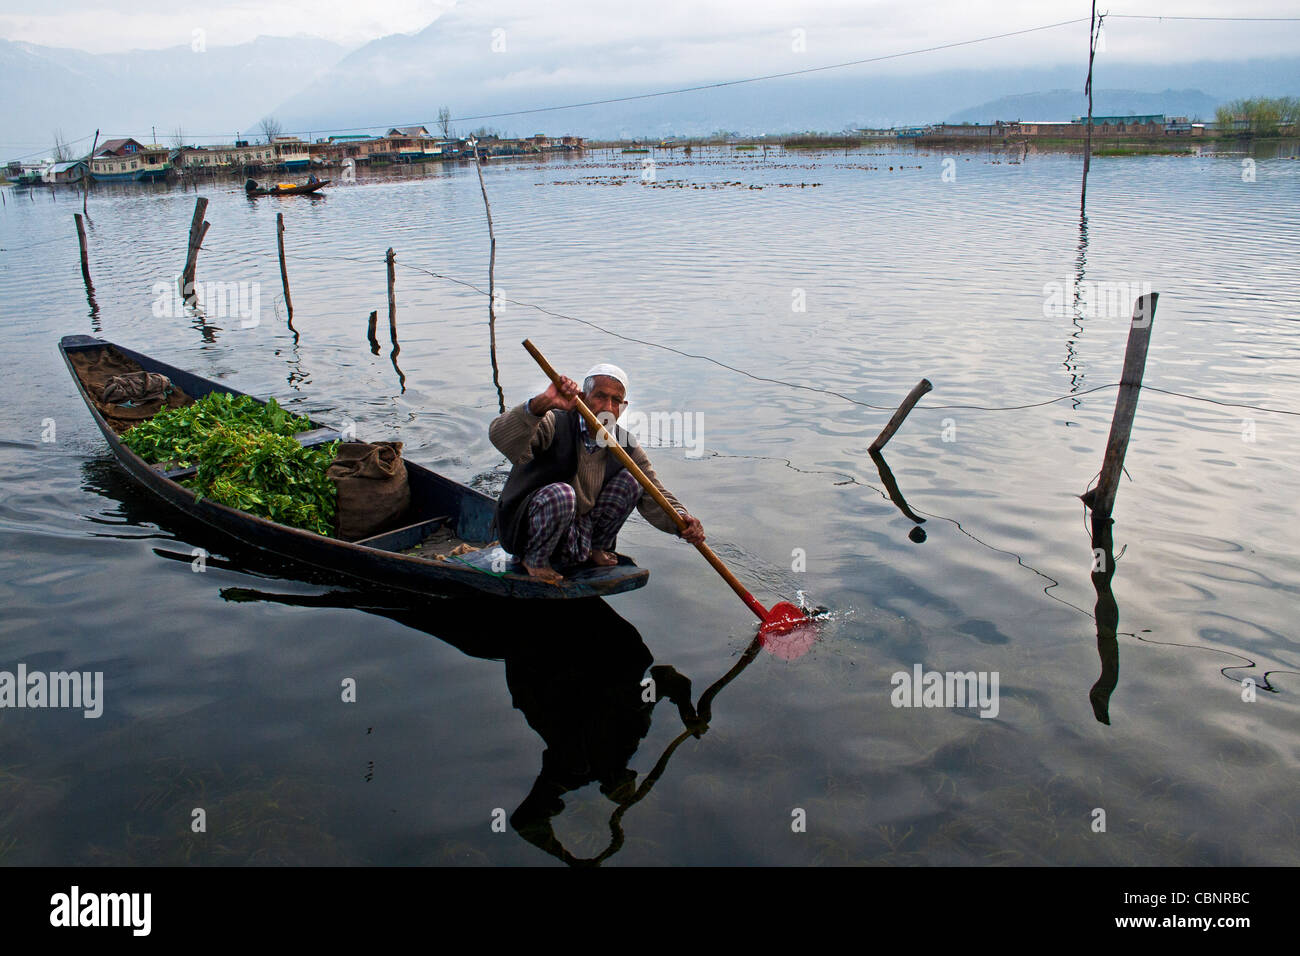 Les Kashmiri font le trajet entre le lac Dal à Srinagar et ramer un shikara traditionnel/canot/bateau de campagne, Cachemire, Inde Banque D'Images